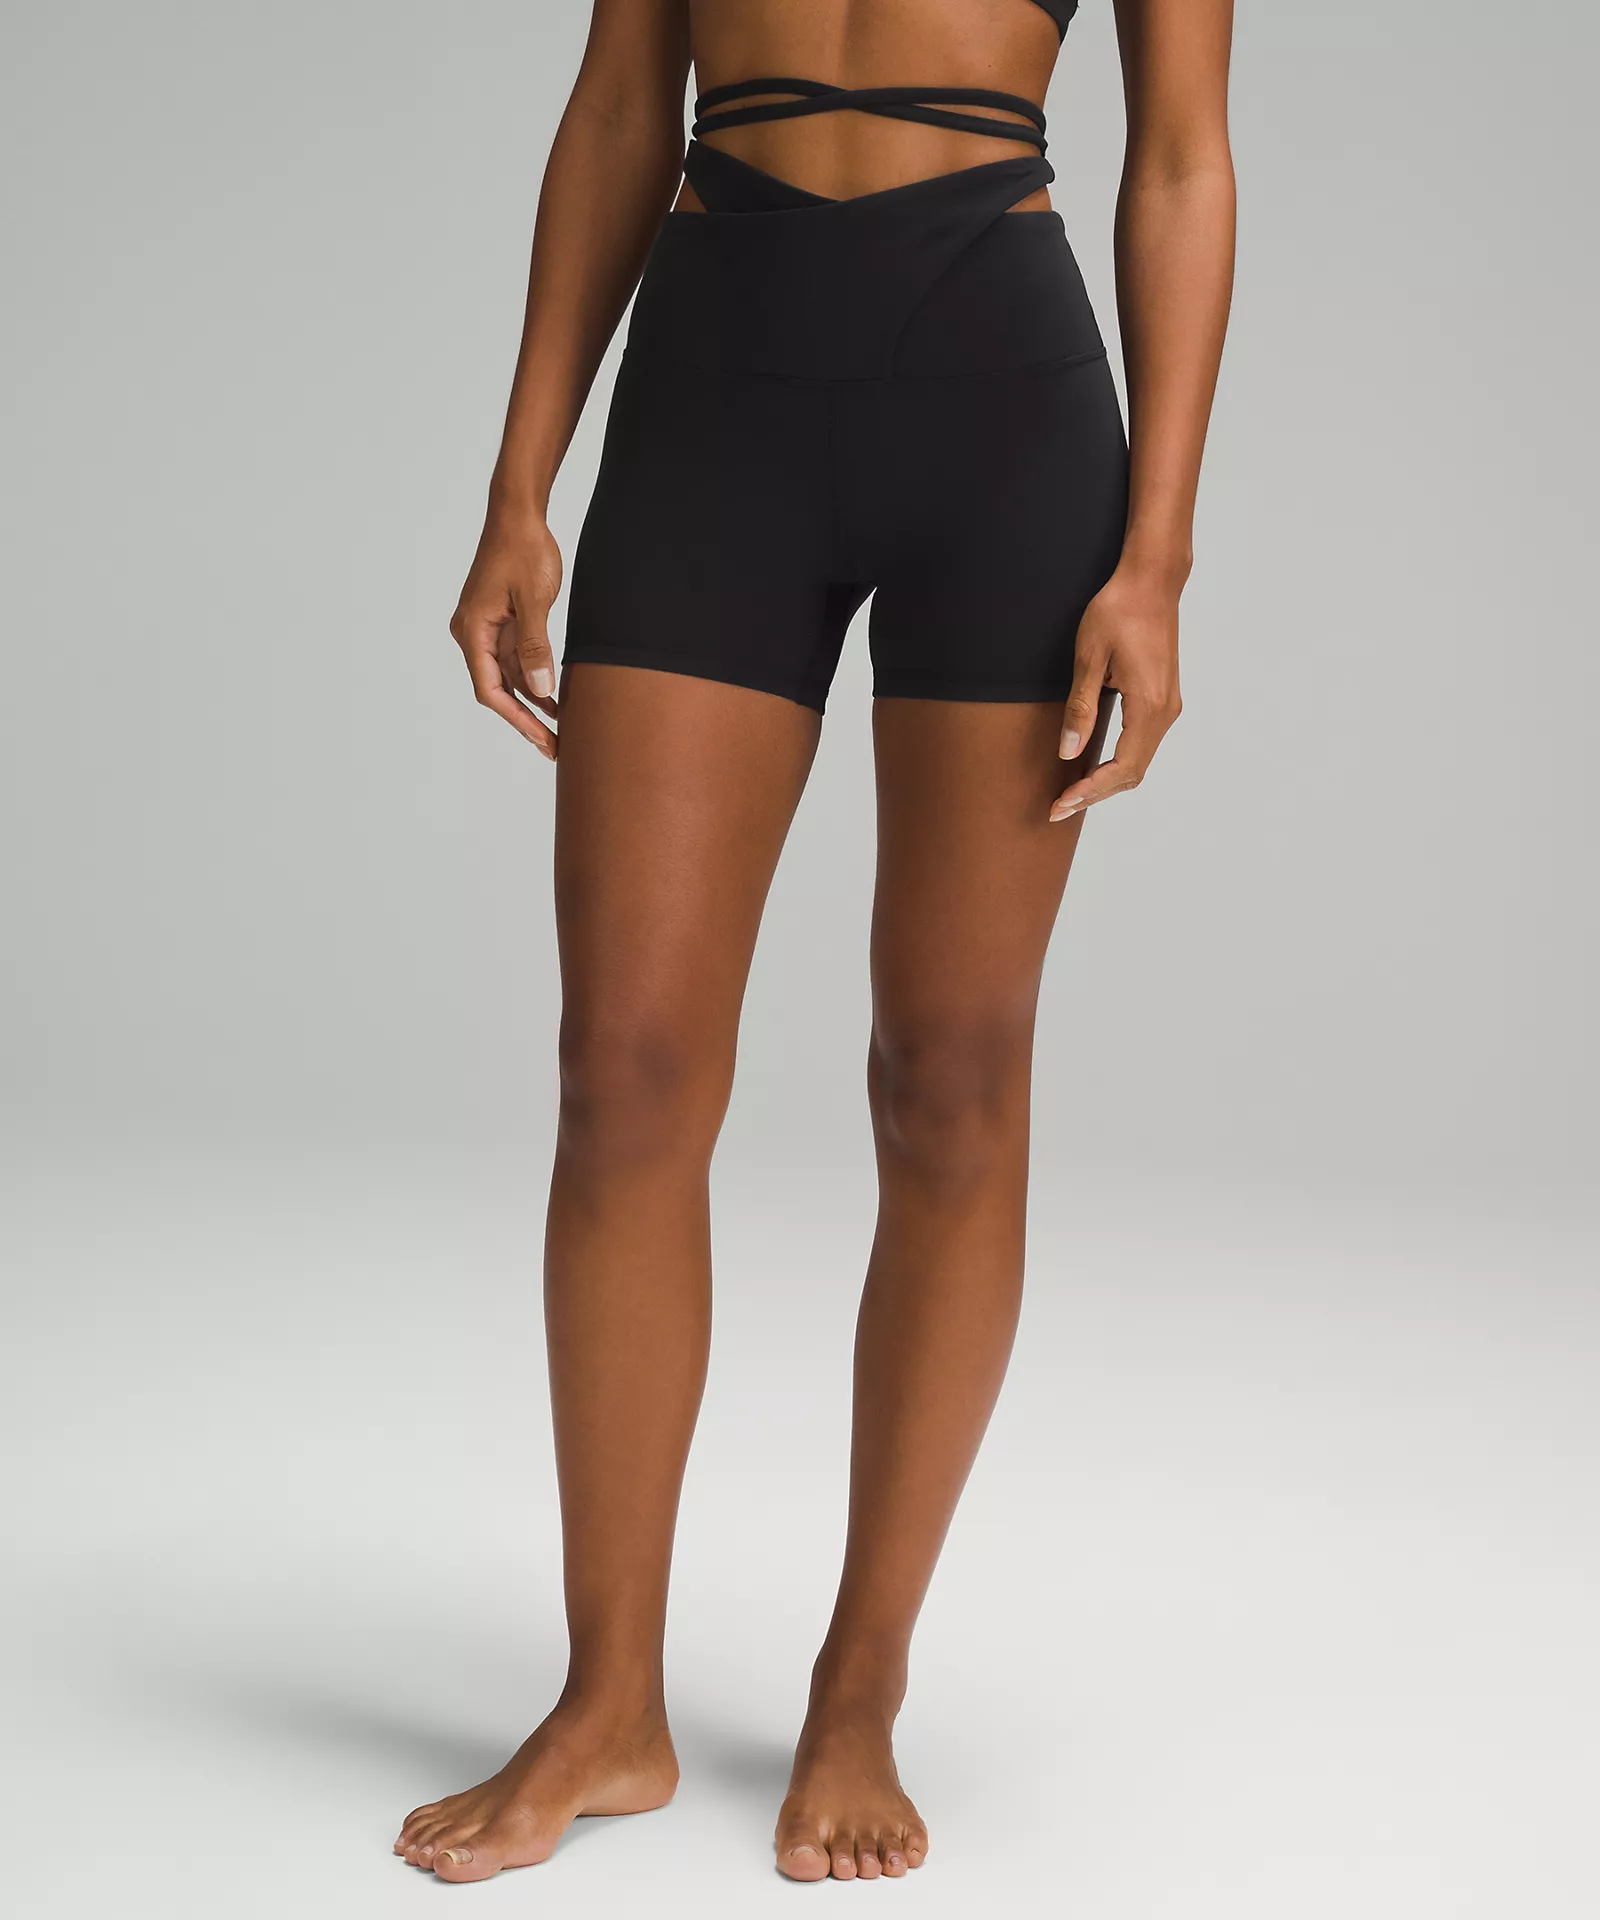  IUGA Biker Shorts Women 6/8 Workout Shorts Womens